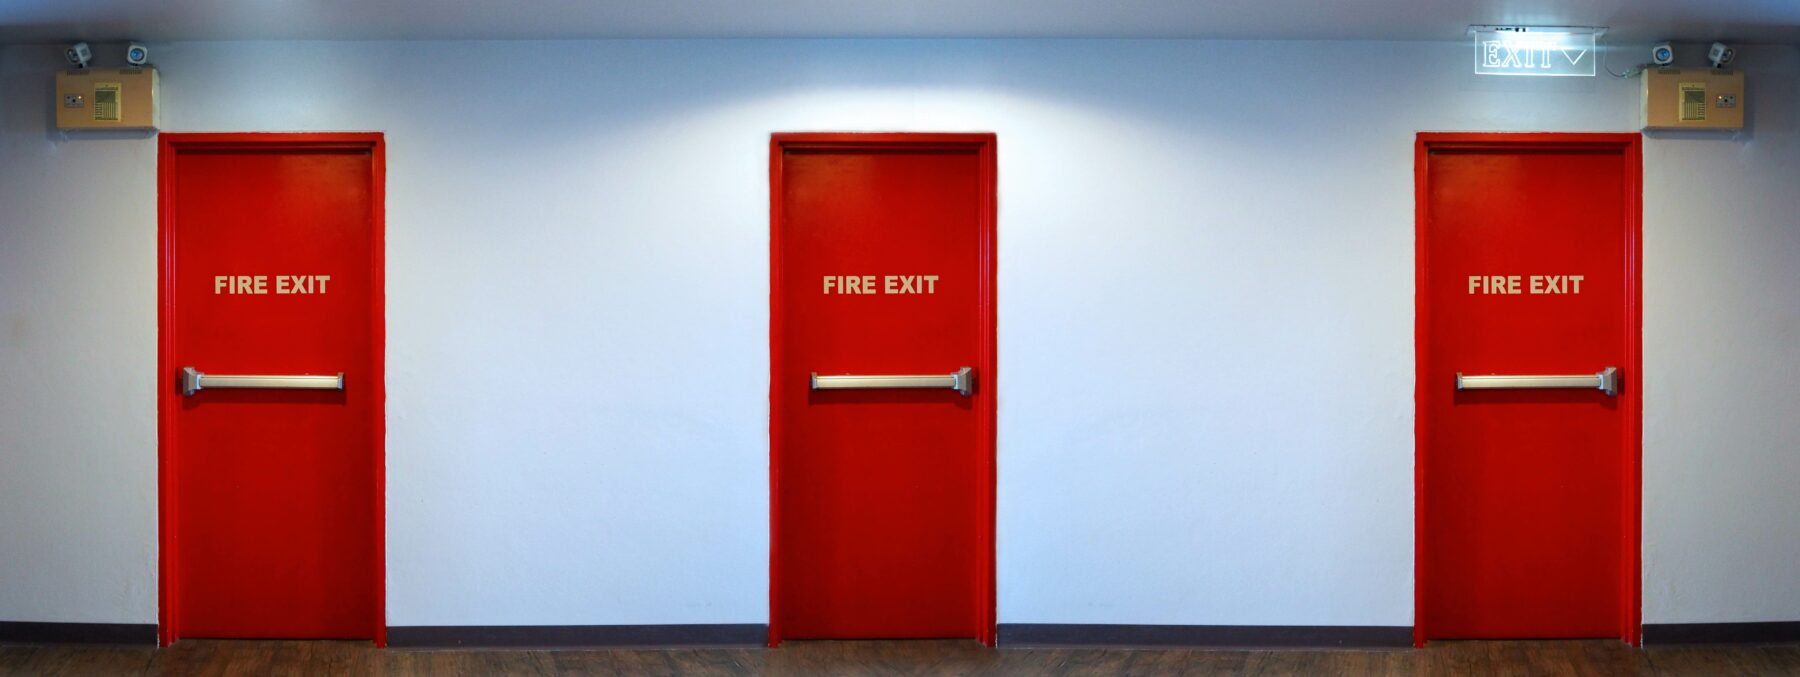 Emergency Fire Exit Doors